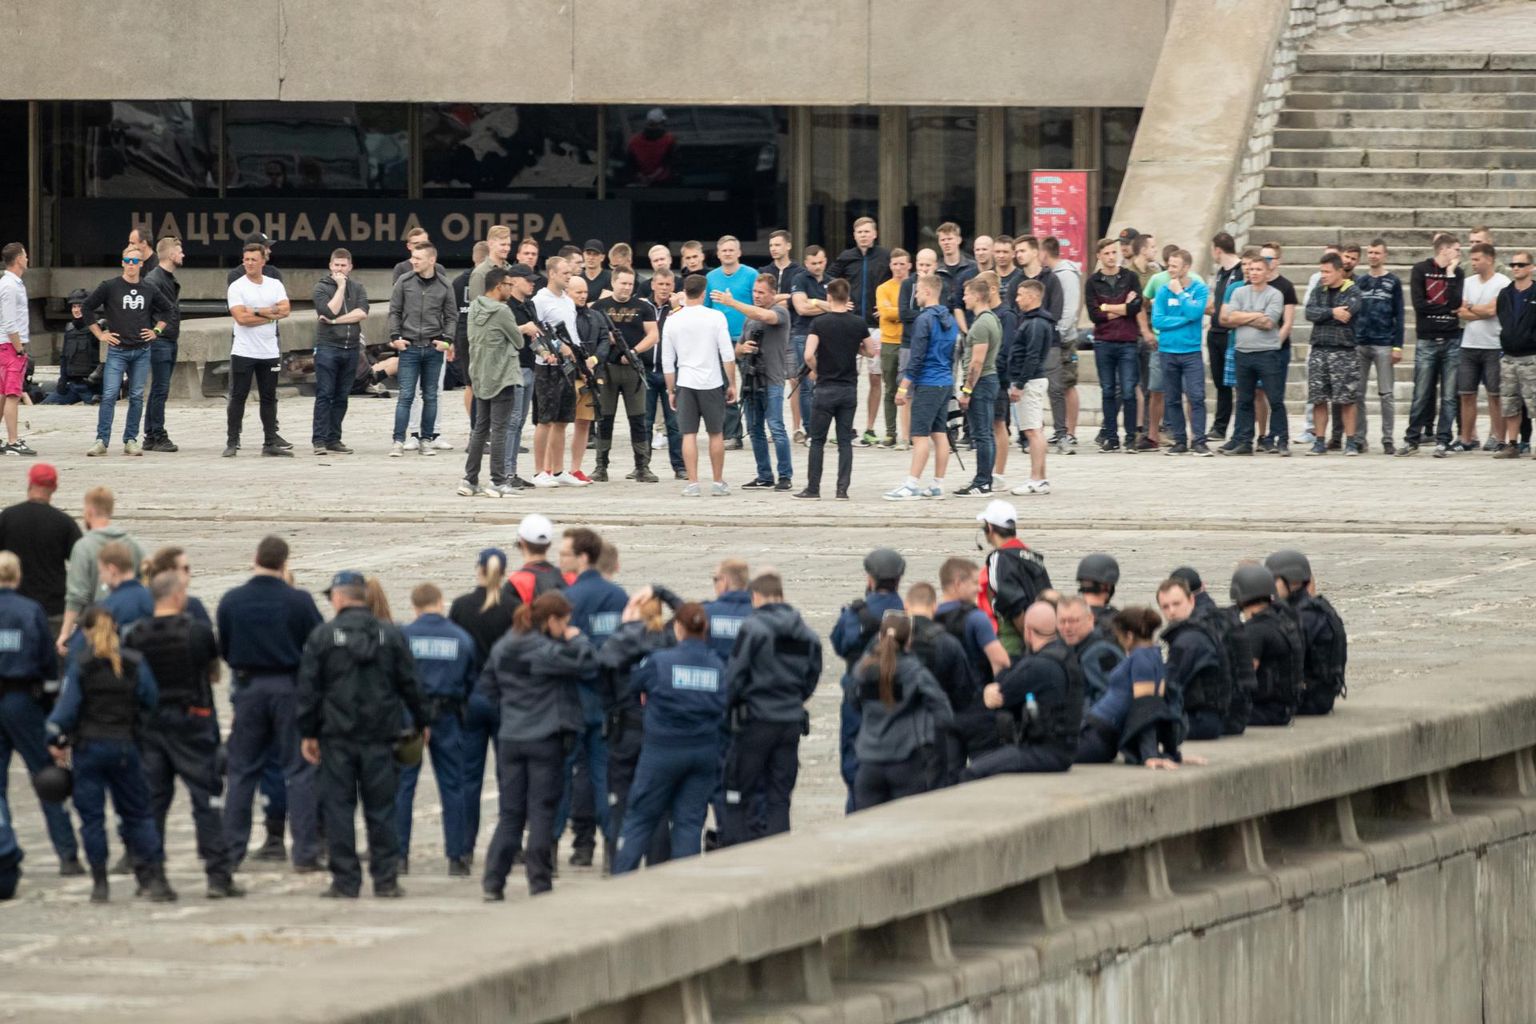 Eile alustati Tallinna linnahalli juures stseenide läbimängimisega. Näitlejatööd proovivad Eesti politseinikud said välismaa filmimeeste juhtimisel nii joosta kui ka oodata. 